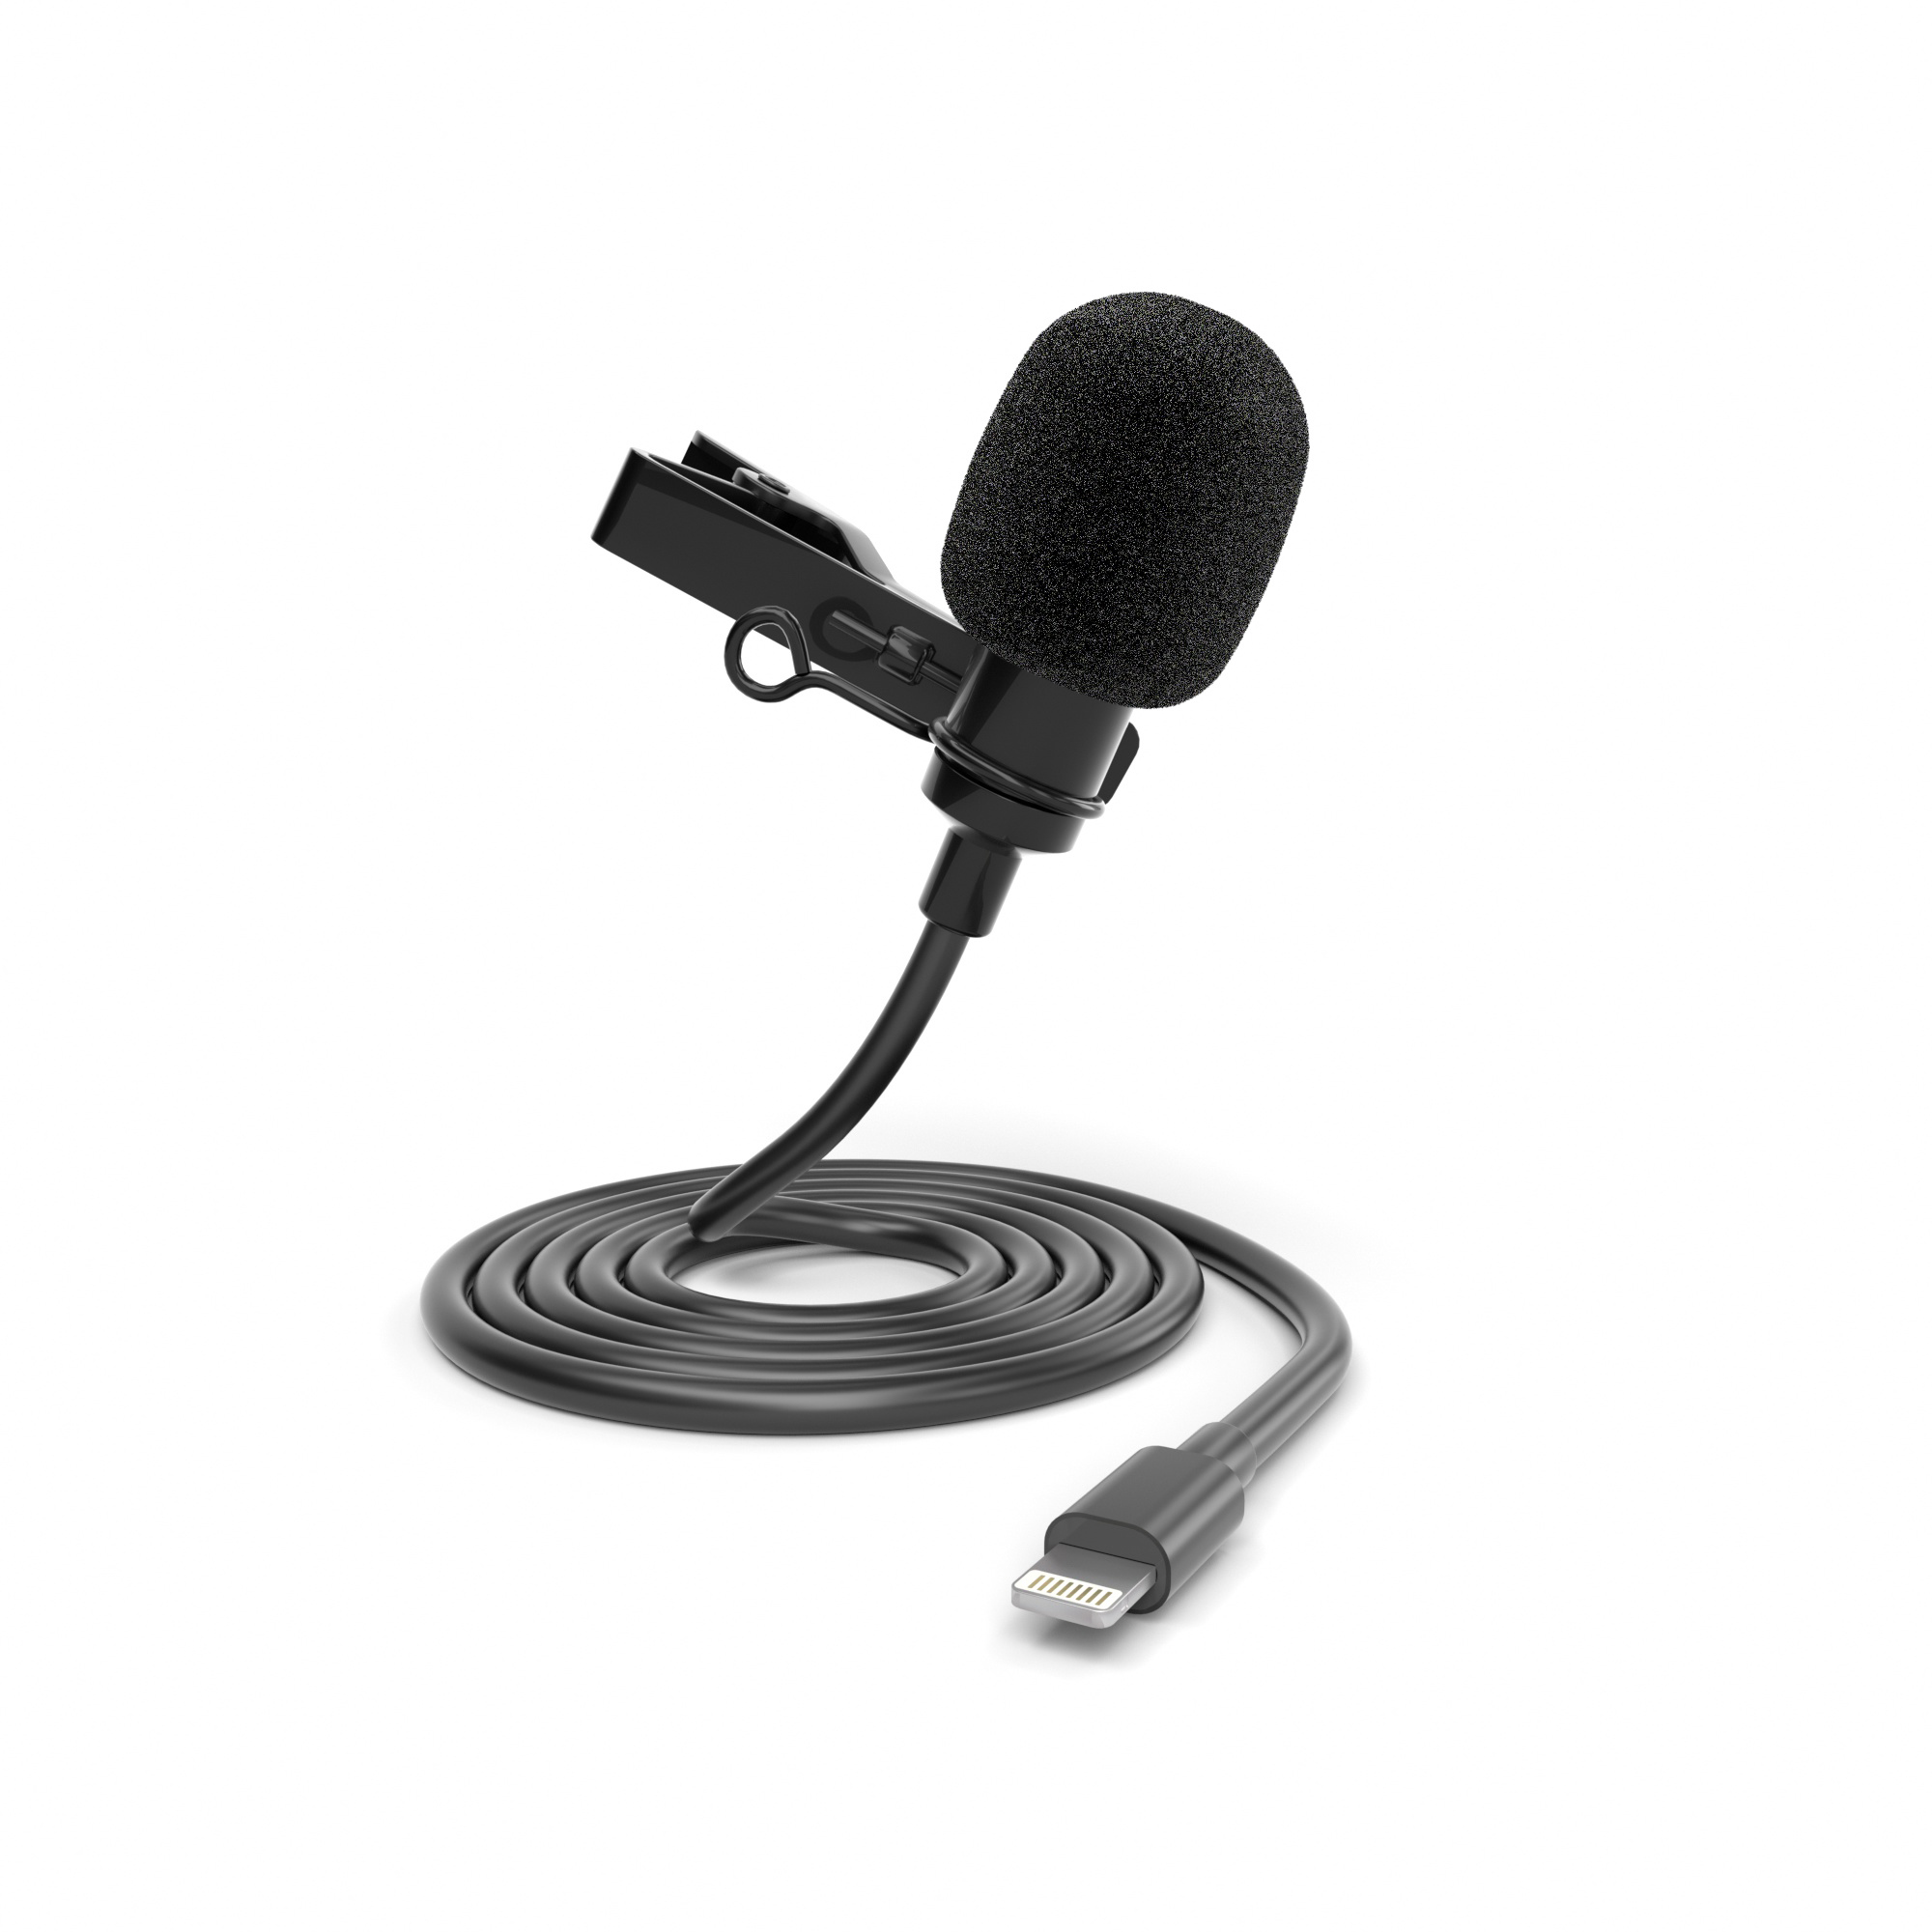 ayex Lavalier Mikrofon für iPhone & iPad - mit Windschutz und Klemme, perfekt für Interviews, Livestreams u.v.m. - LV-1 Lightn.